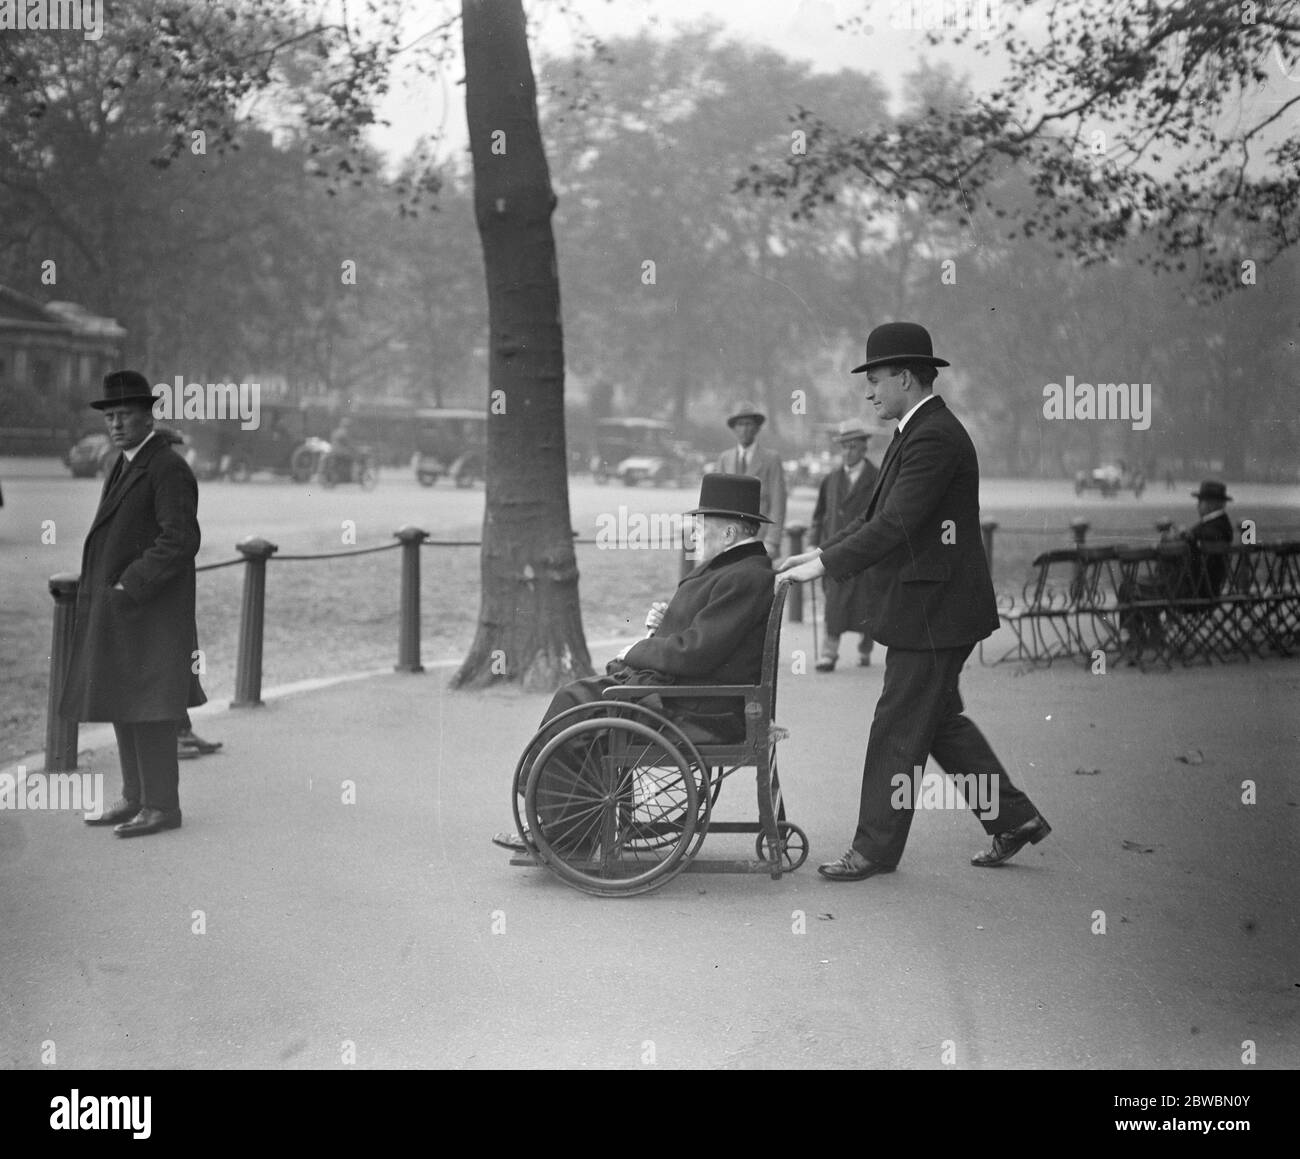 Visite du fauteuil roulant de Lord Mersey au parc . Lord Mersey ( 83 ) , dont le dernier poste public était en tant que commissaire de l'épave pour s'enquérir de la destruction de la Falaba et de la Lusitania , en visite dans le parc à son fauteuil roulant . 29 octobre 1923 Banque D'Images